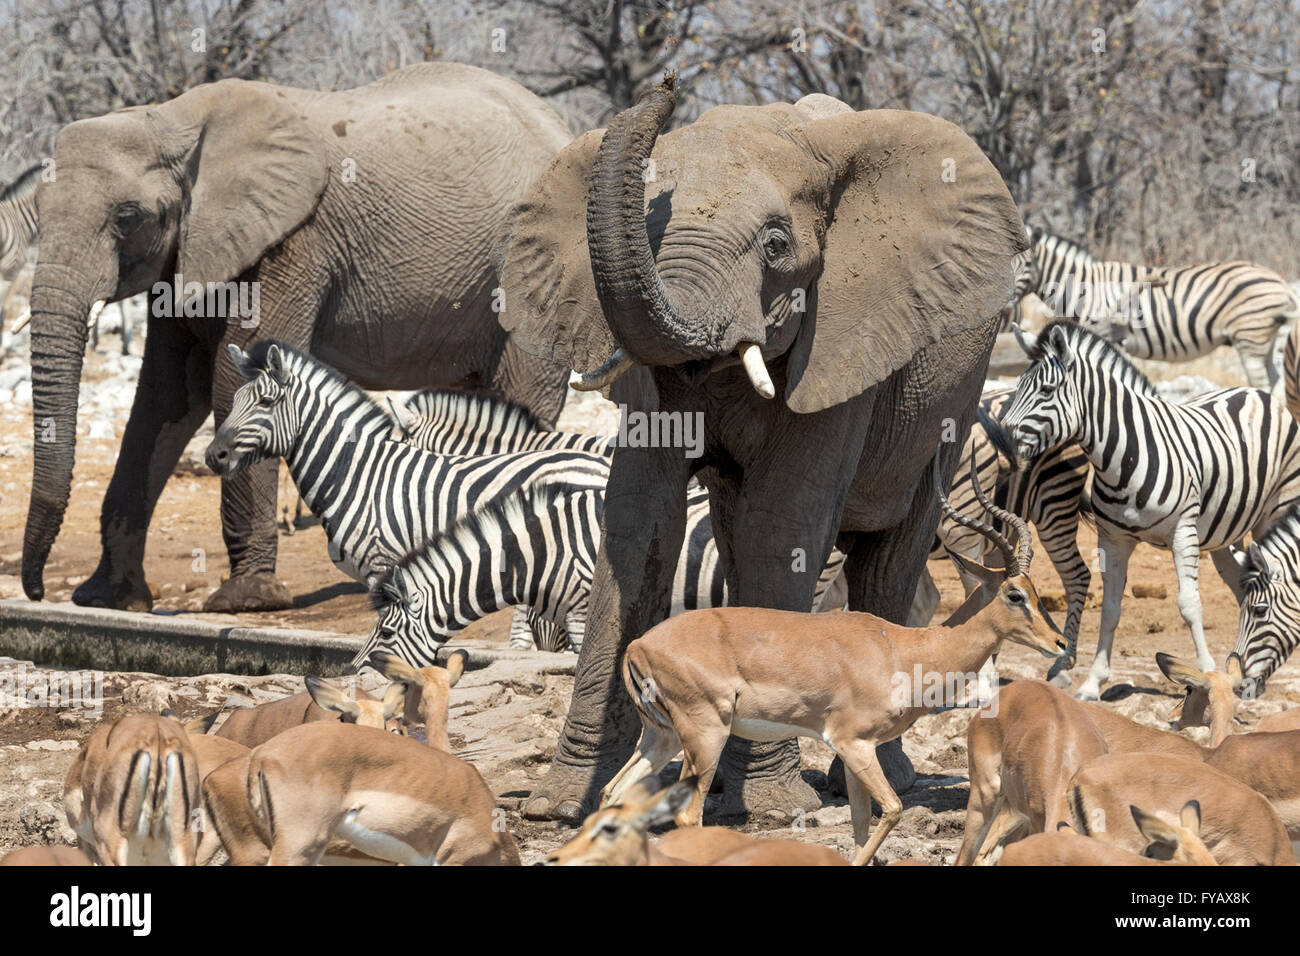 Scenes around watering hole, Elephants scarring off impala, Plains Zebra, Burchell's race, Black-faced impala, Etosha National Park, Namibia Stock Photo